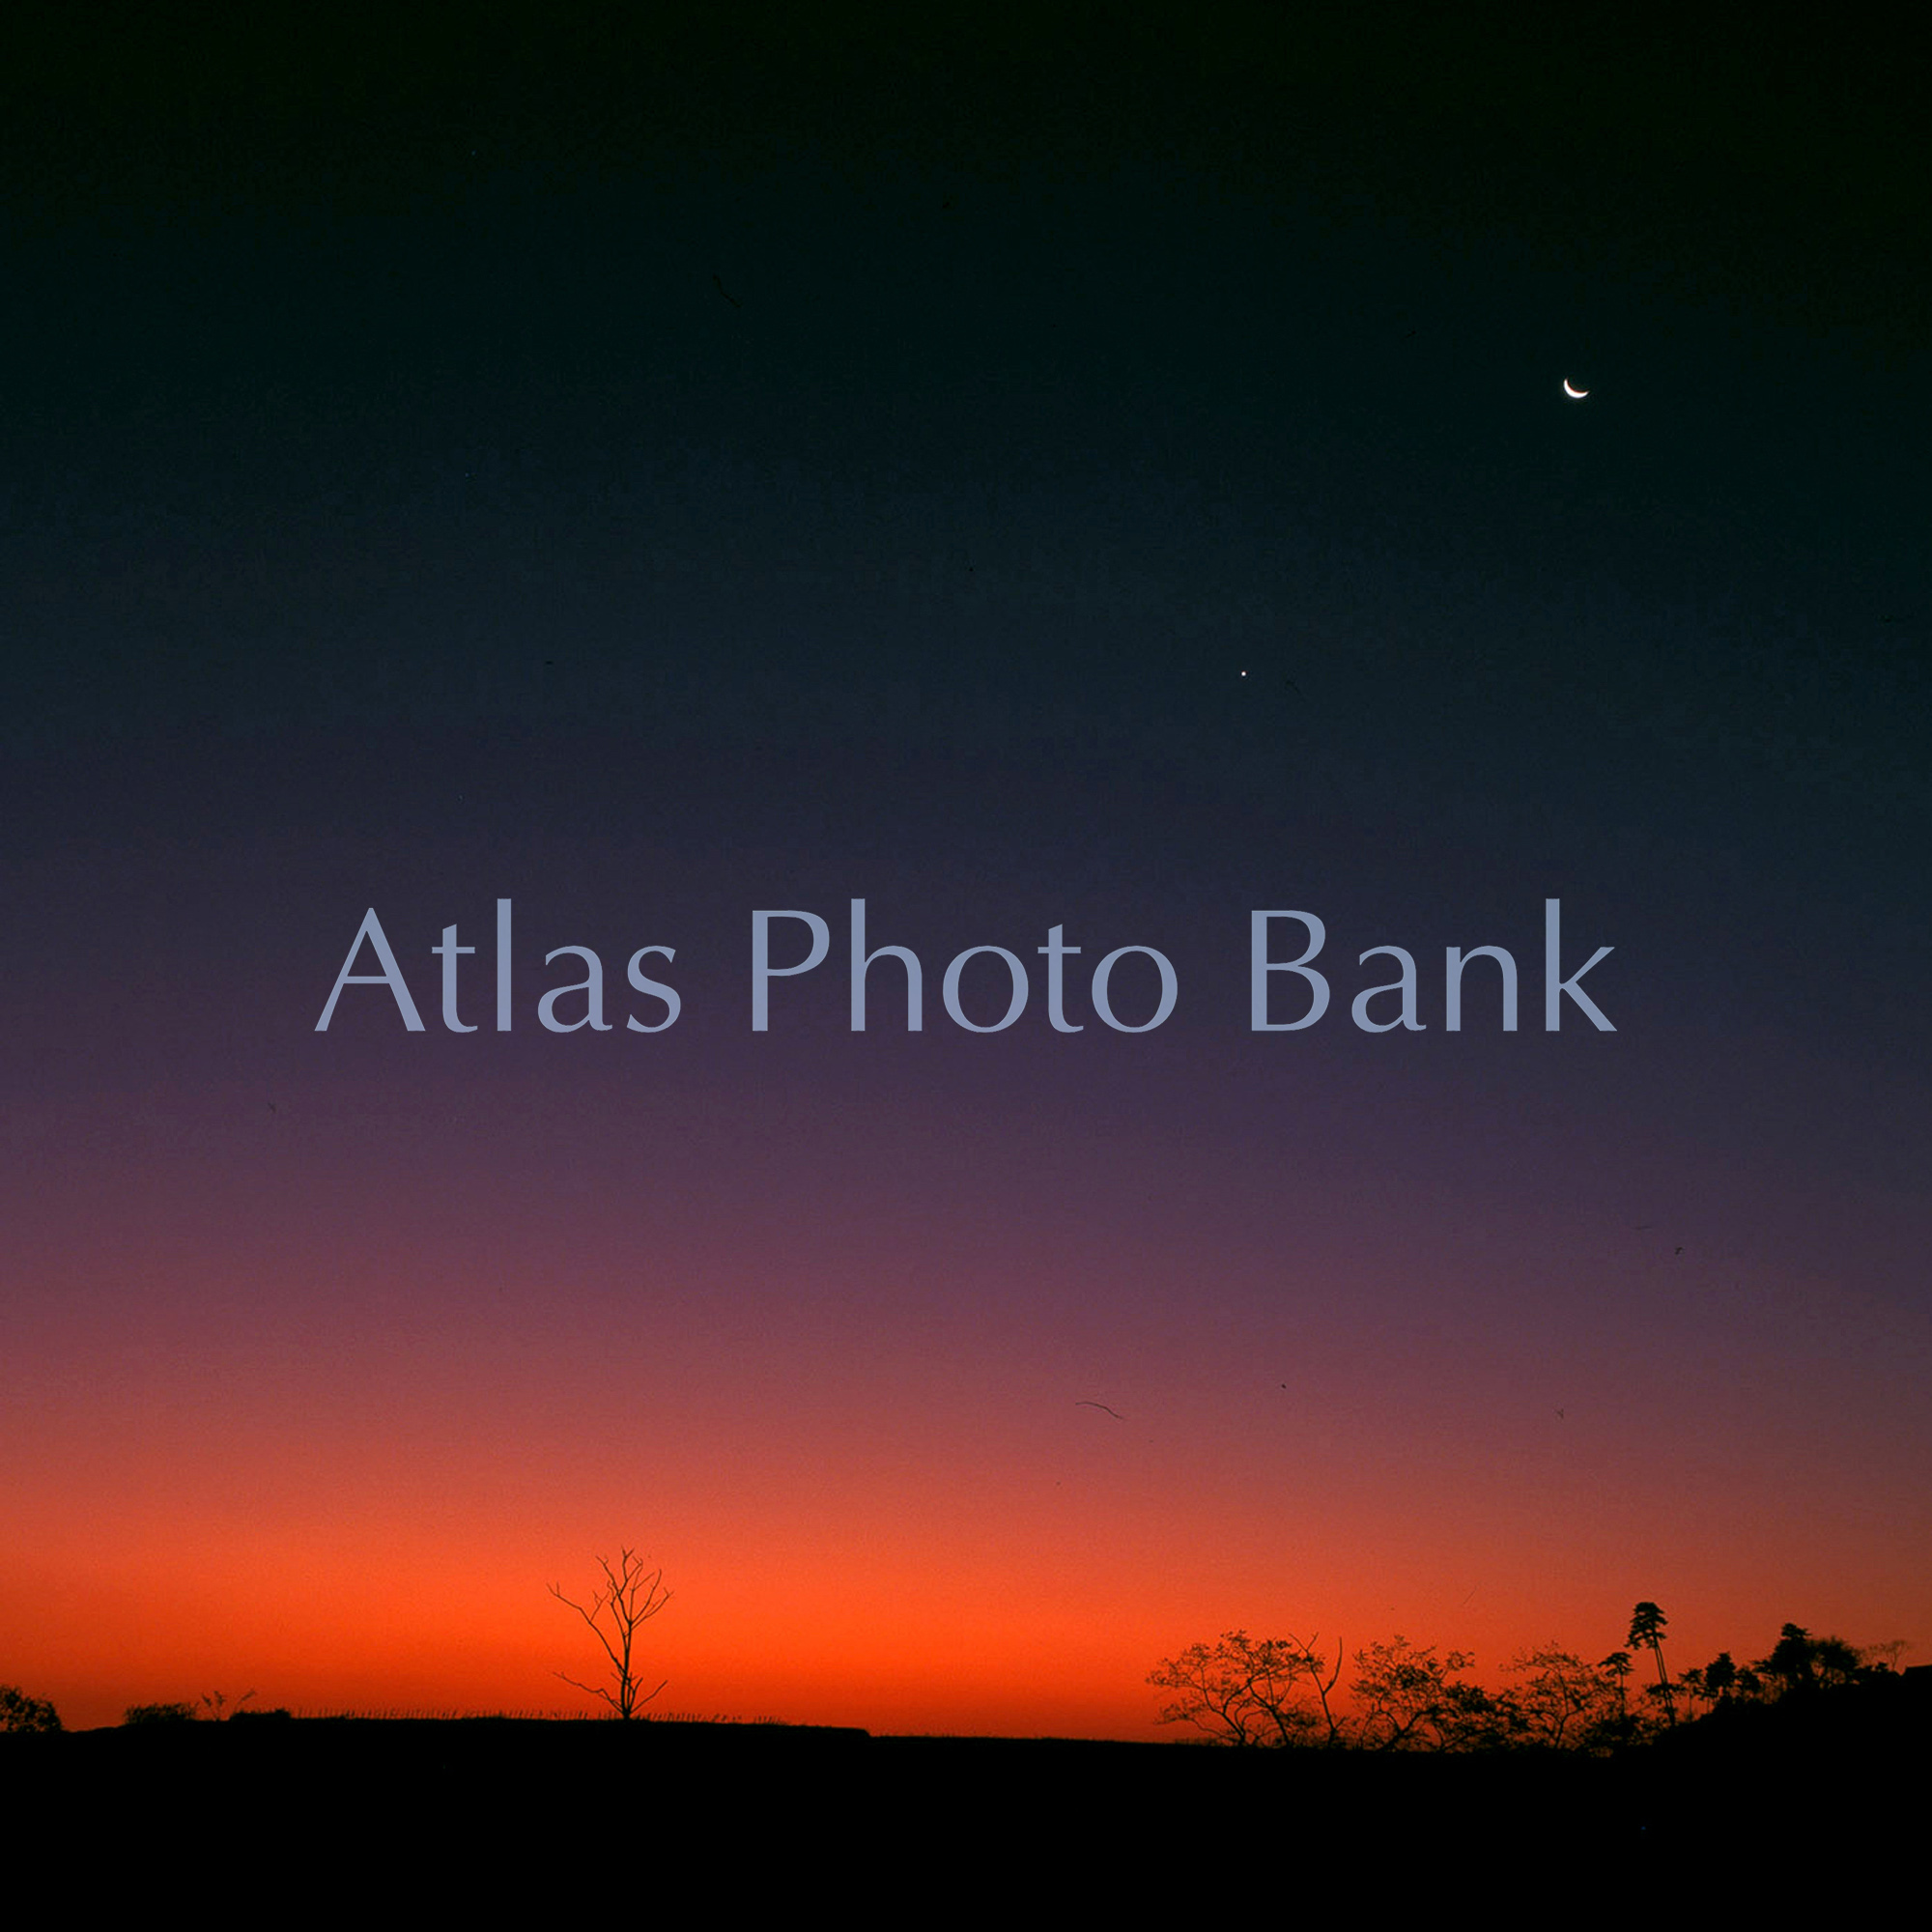 MOP-124-朝焼けの空に輝く月と金星